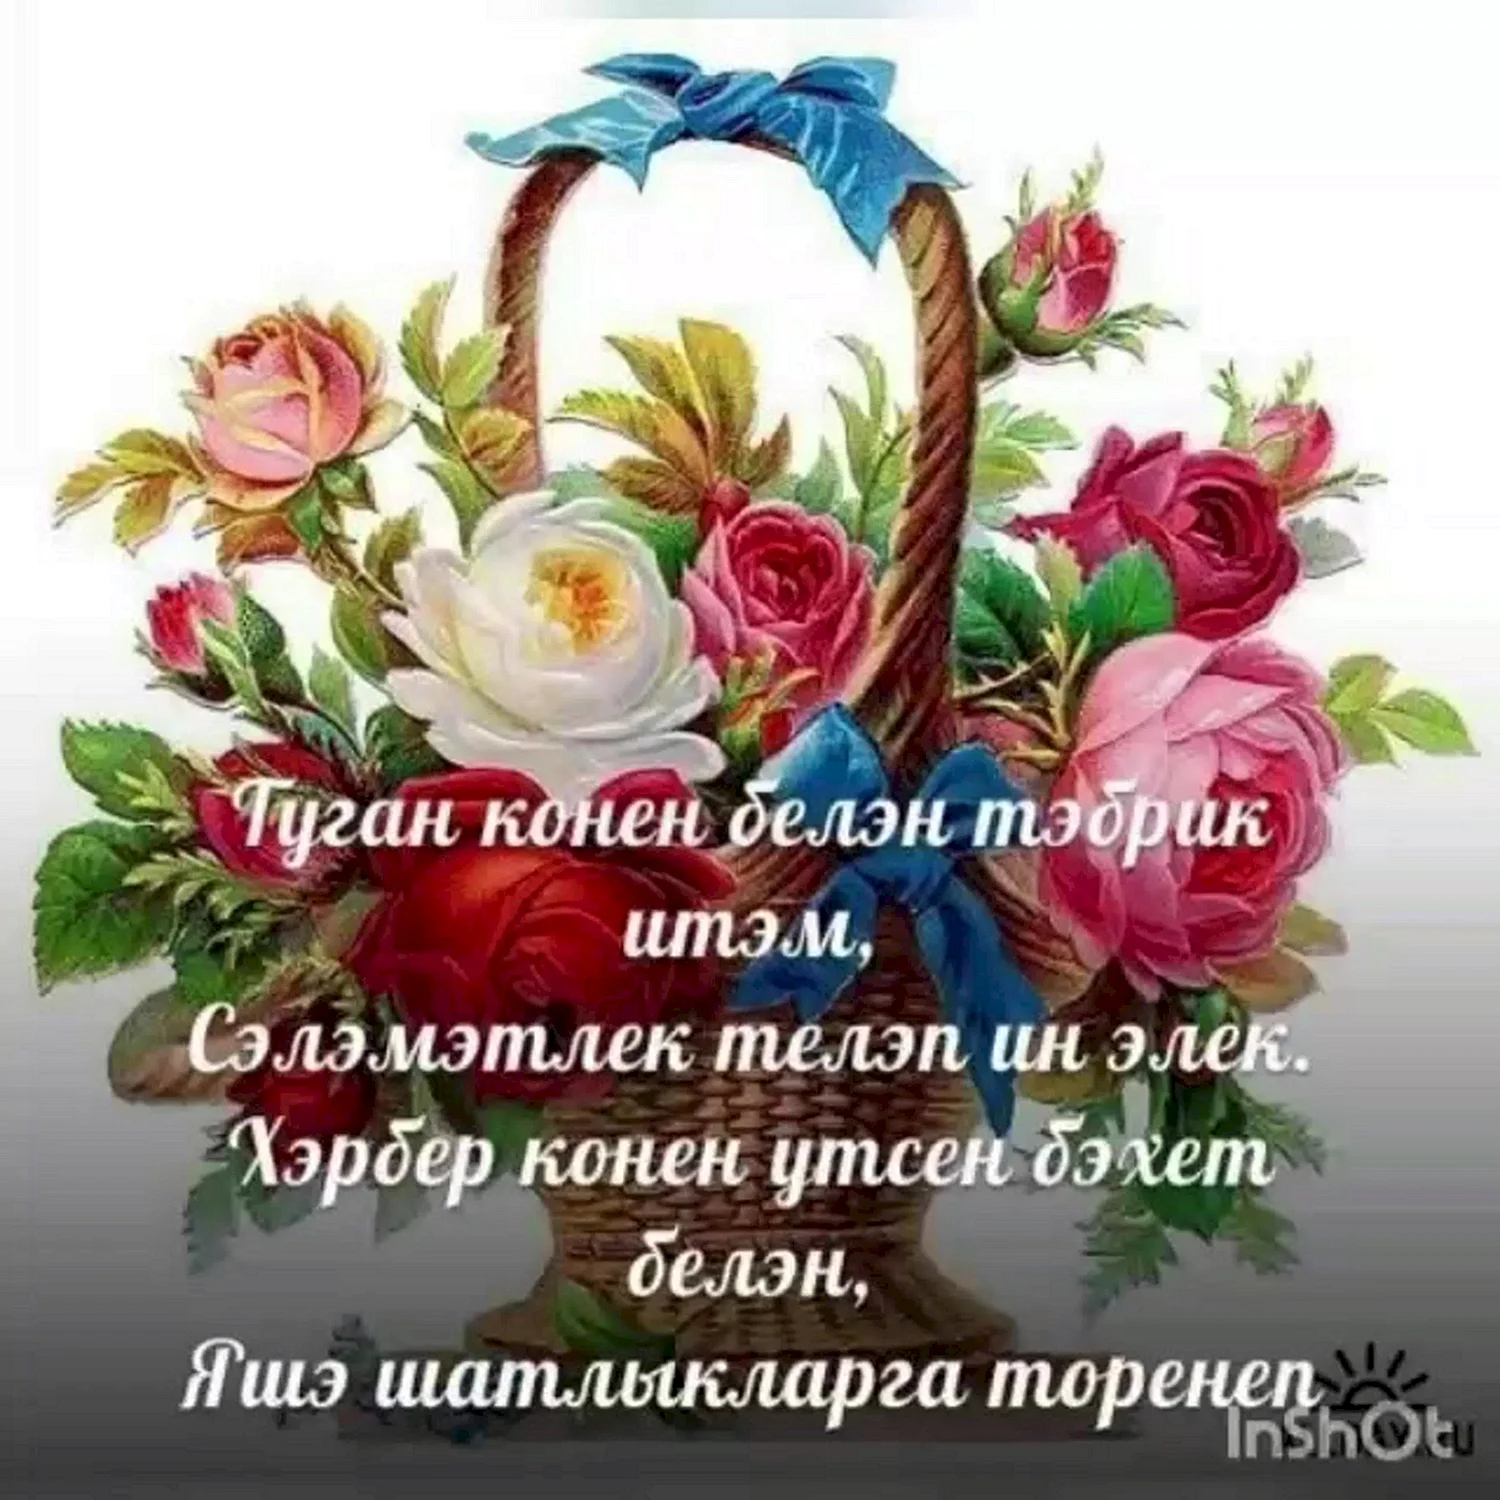 Оформите свою страницу с картинками для С Днем матери на татарском языке